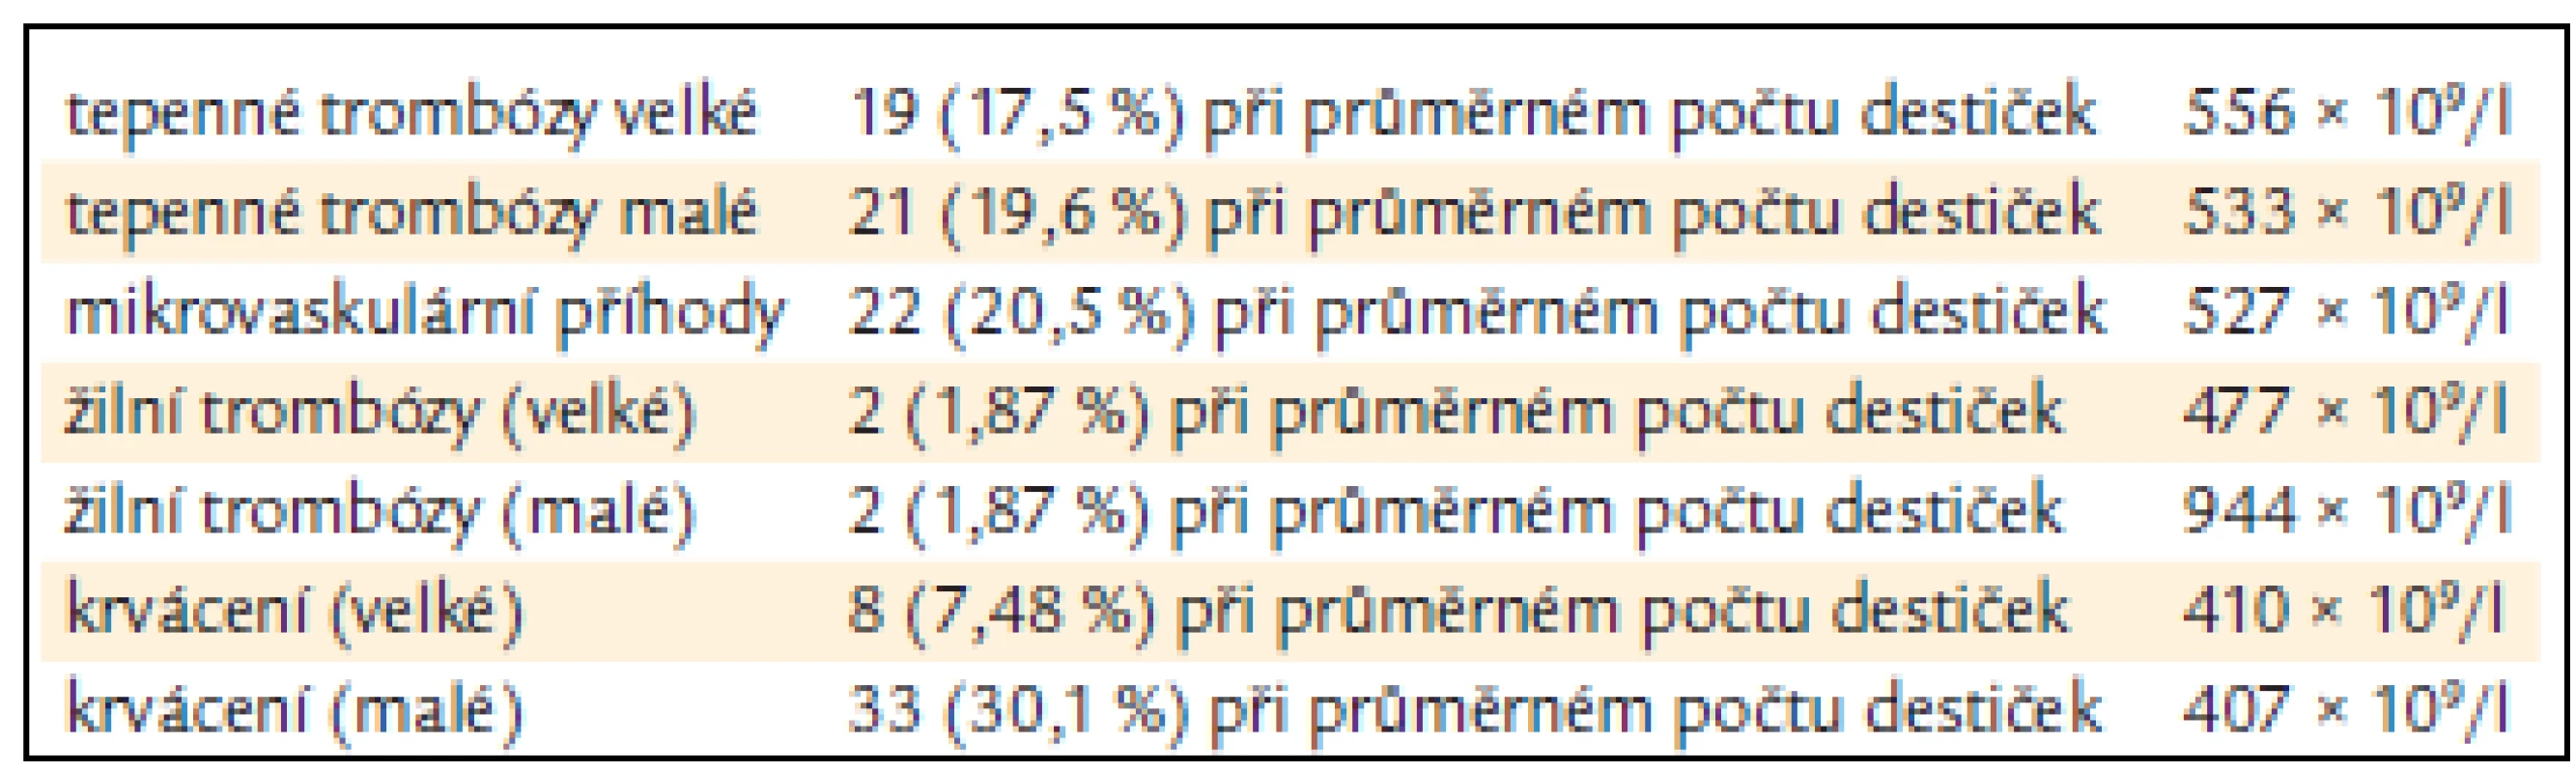 Výskyt 107 trombotických a krvácivých projevů v souboru 672 pacientů českého registru [13].